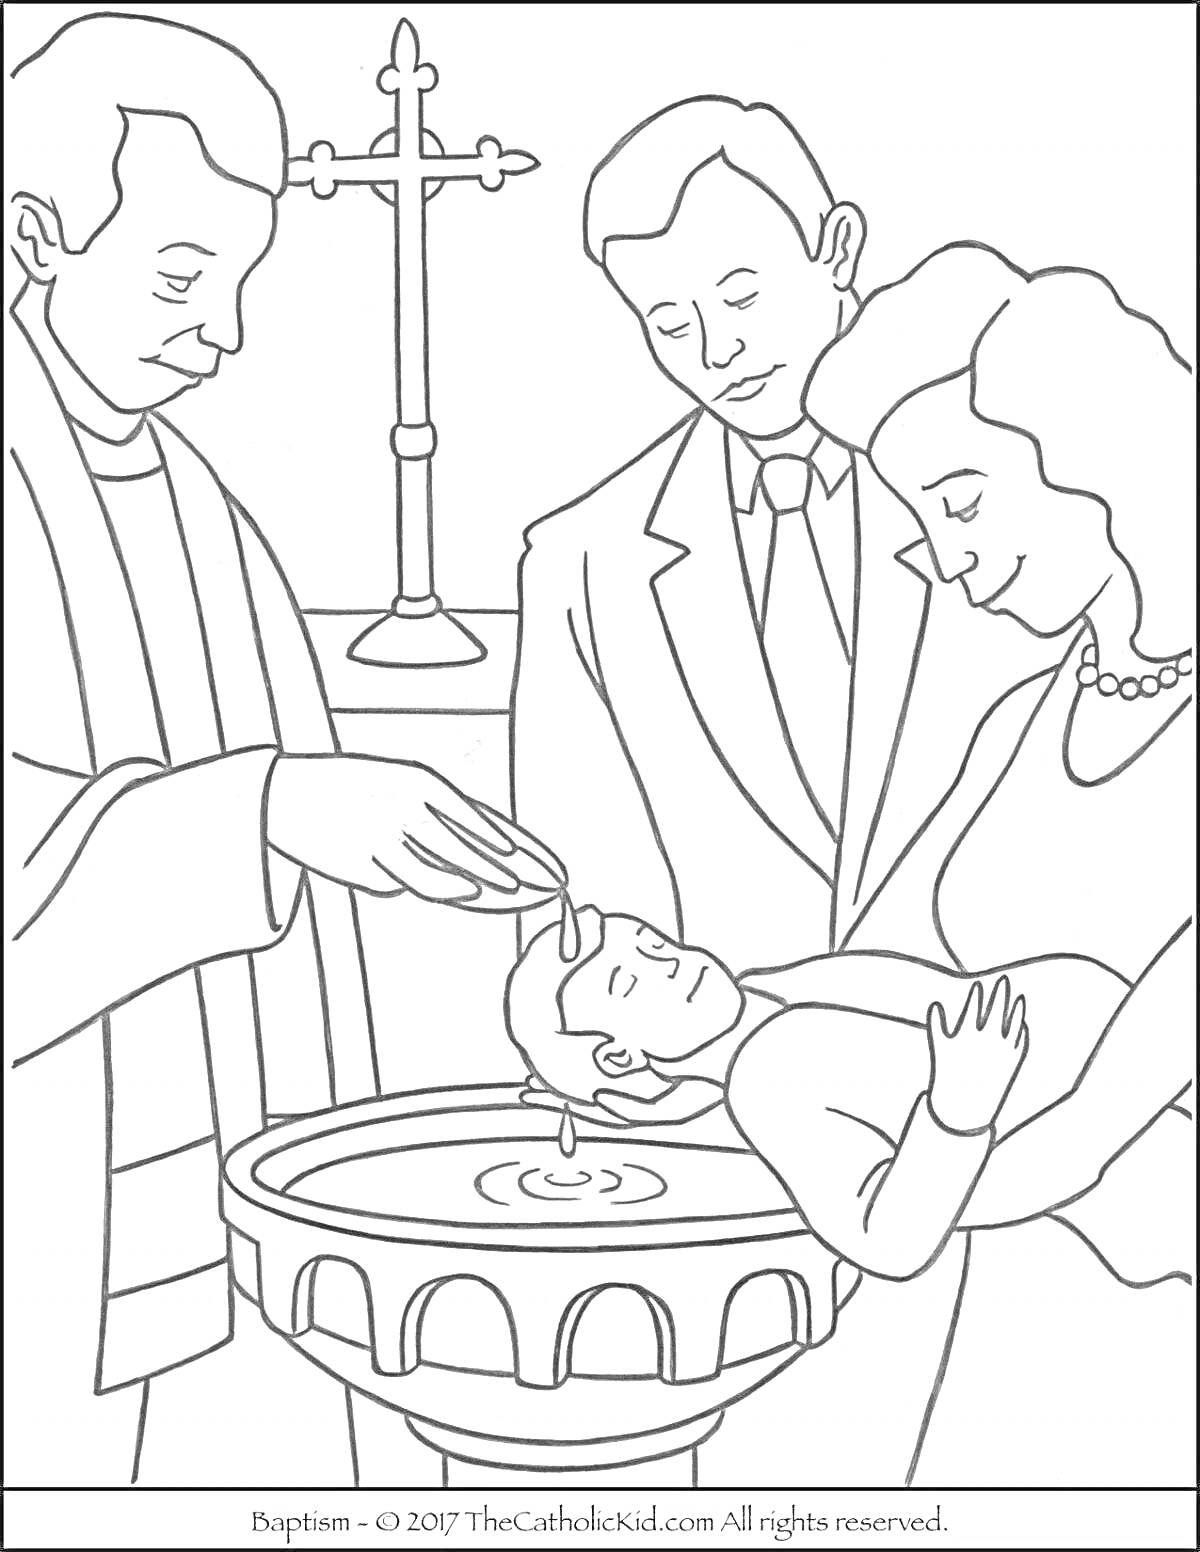 На раскраске изображено: Крещение, Таинство, Религия, Священник, Родители, Младенец, Крест, Купель, Святость, Вода, Церемония